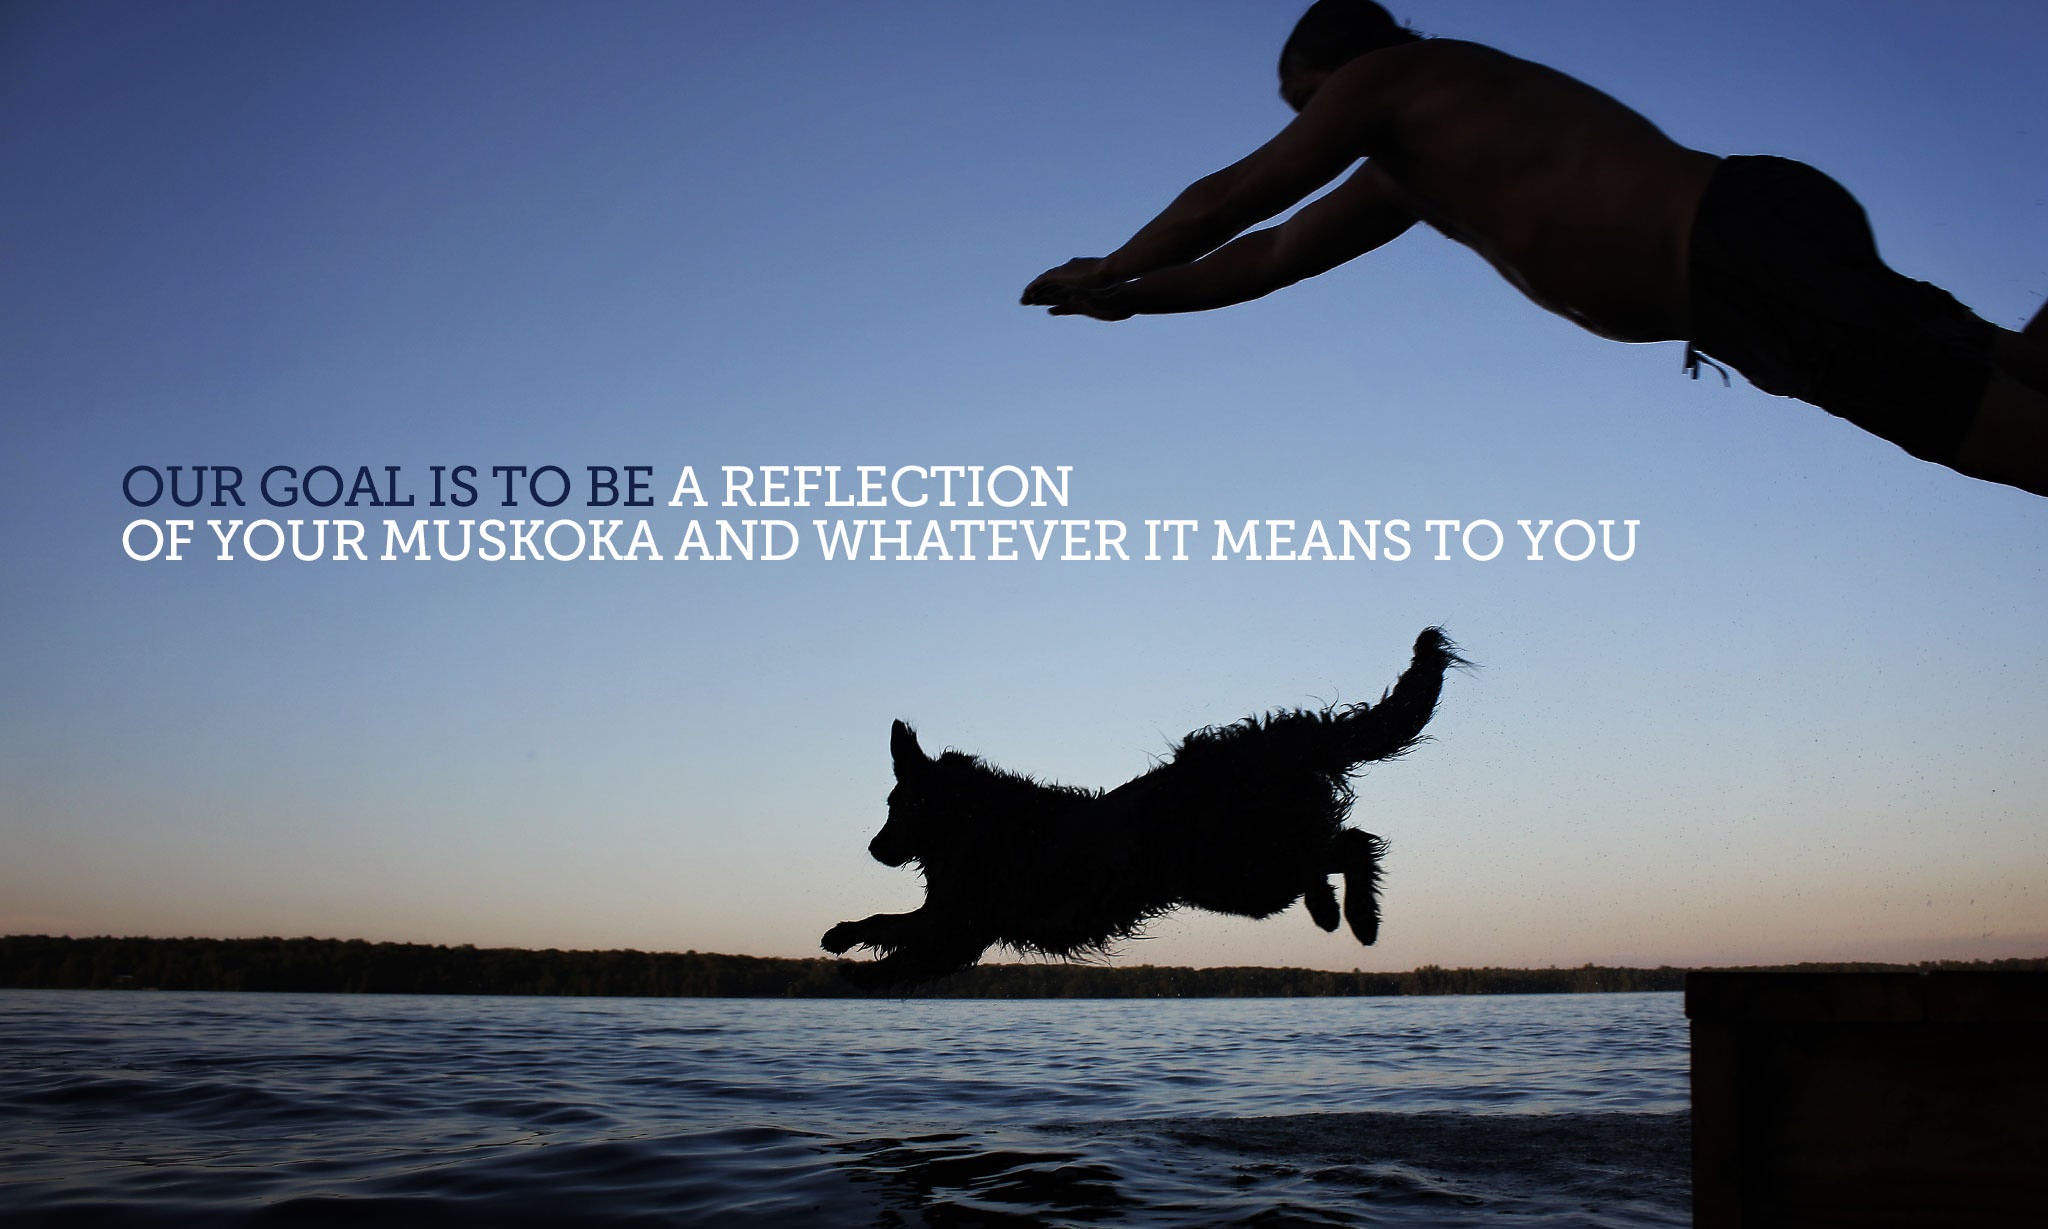 Pure Muskoka - It's A Feeling